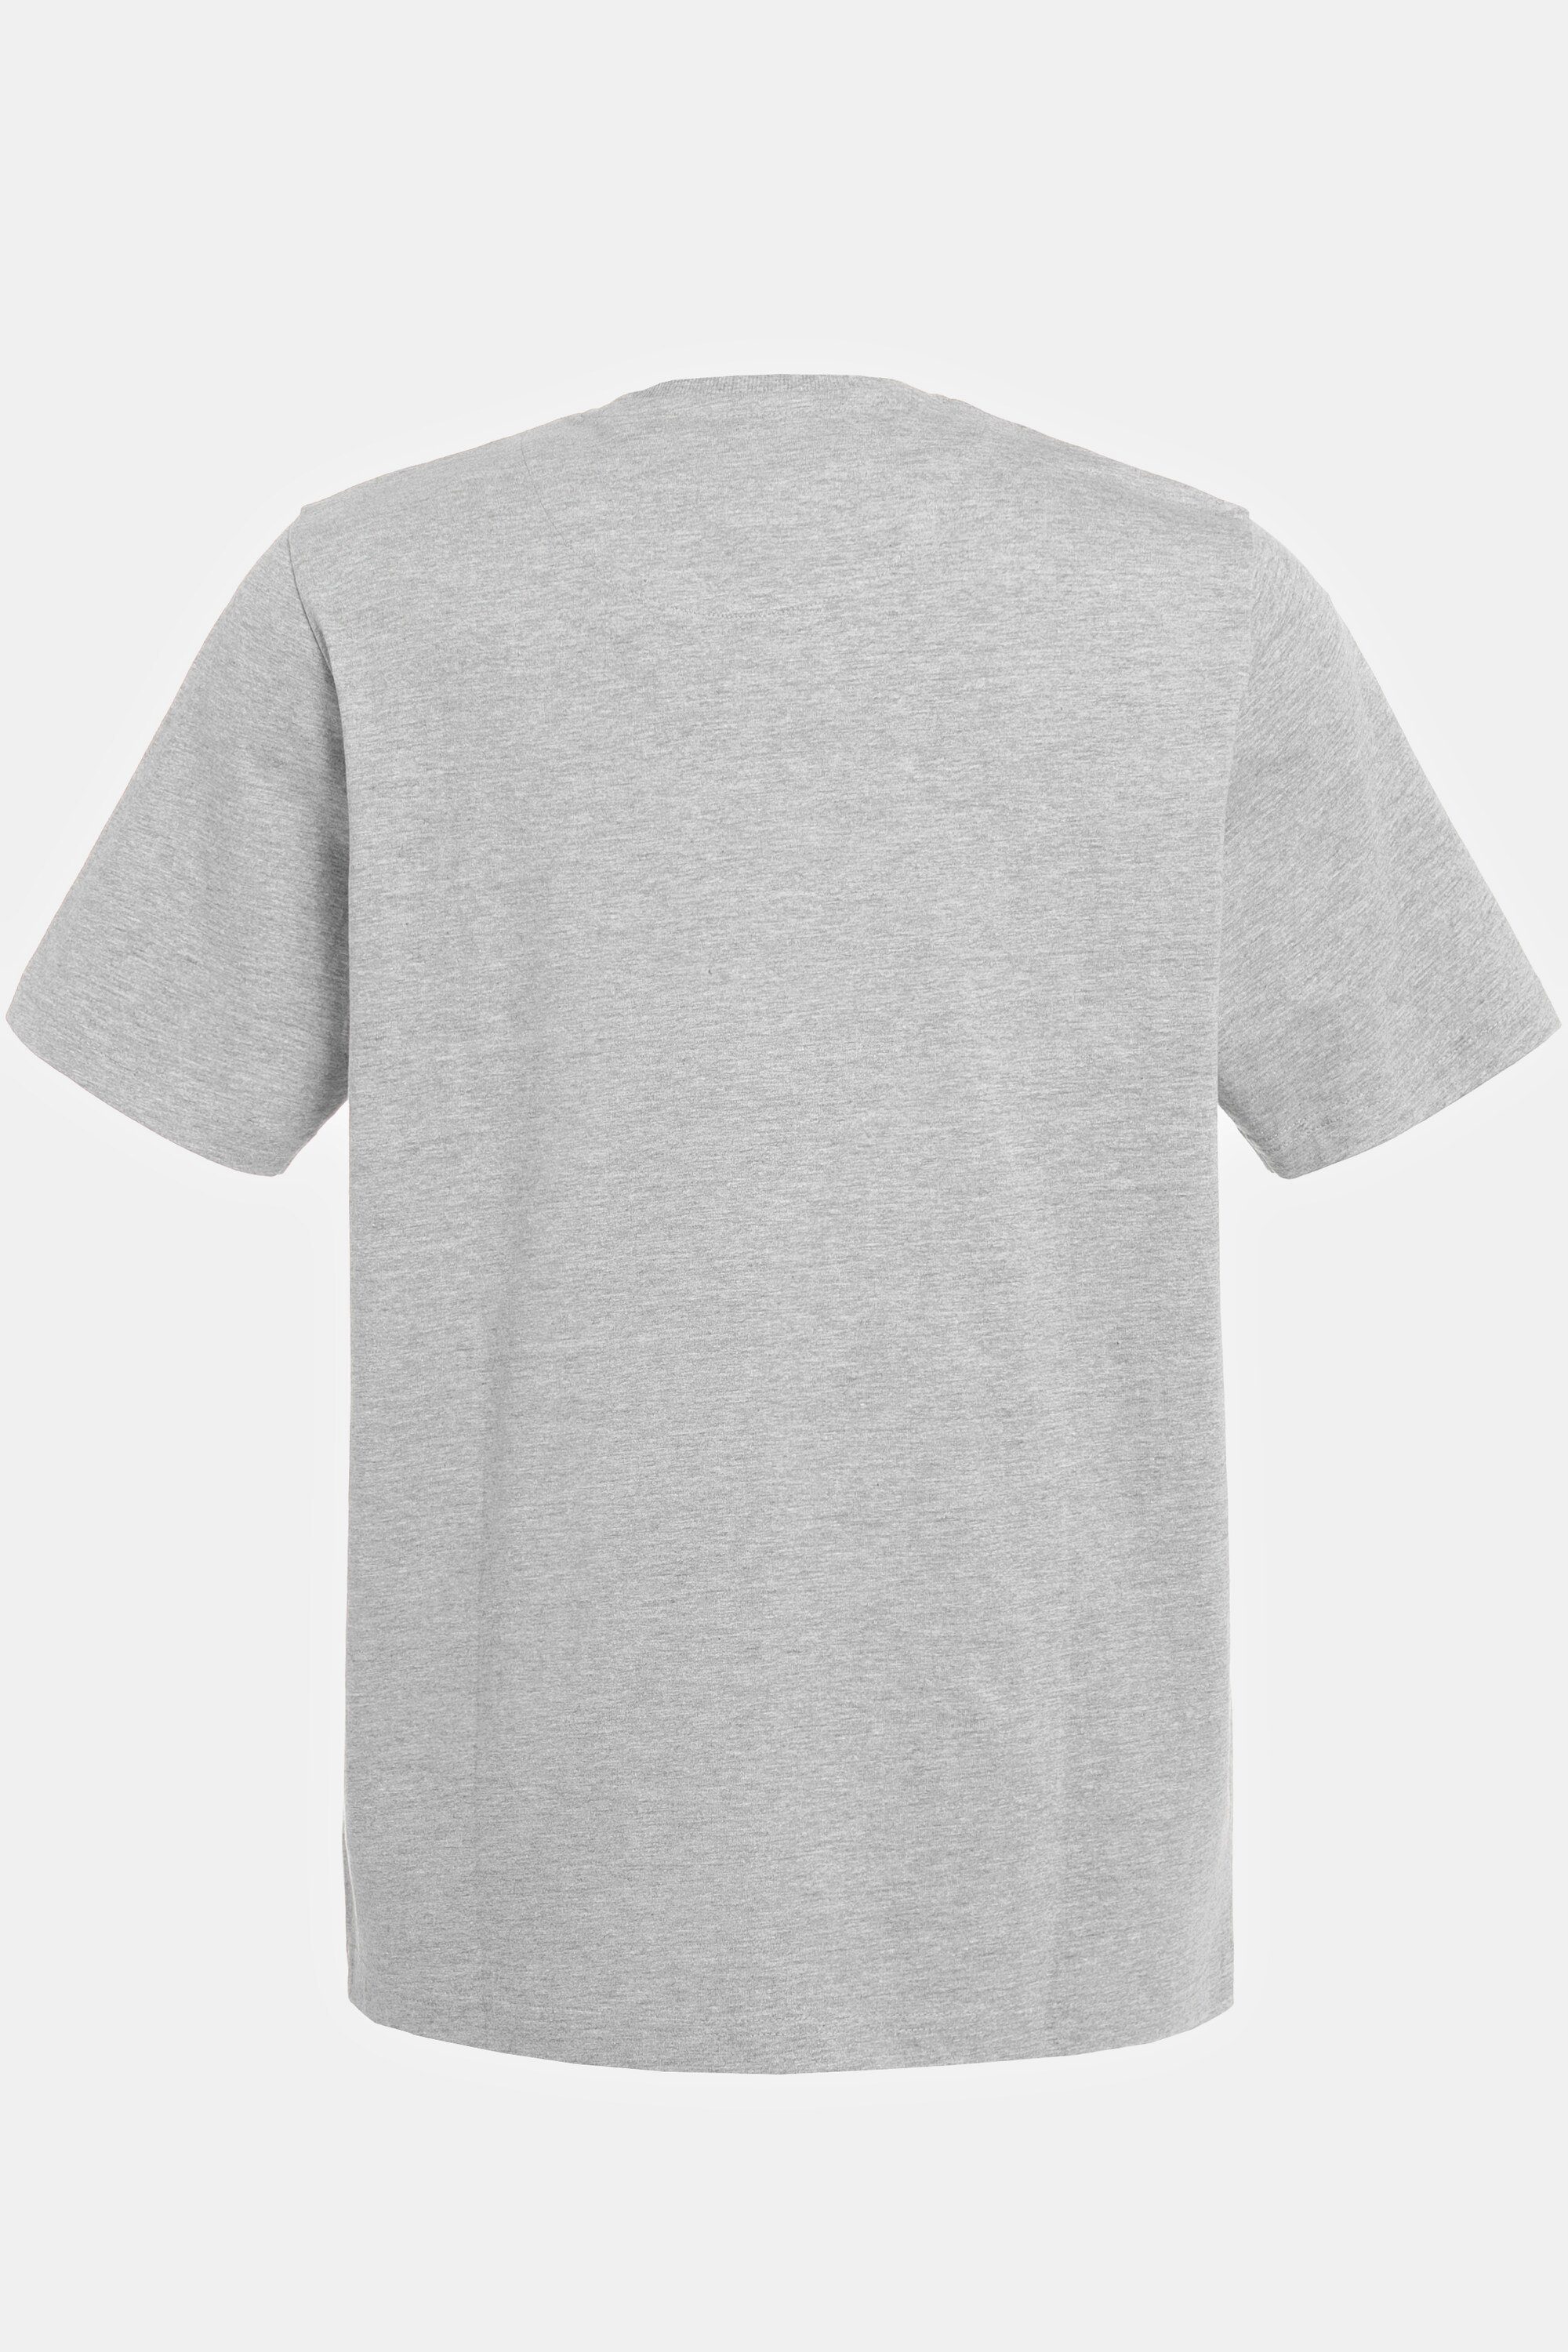 T-Shirt Print T-Shirt JP1880 Halbarm